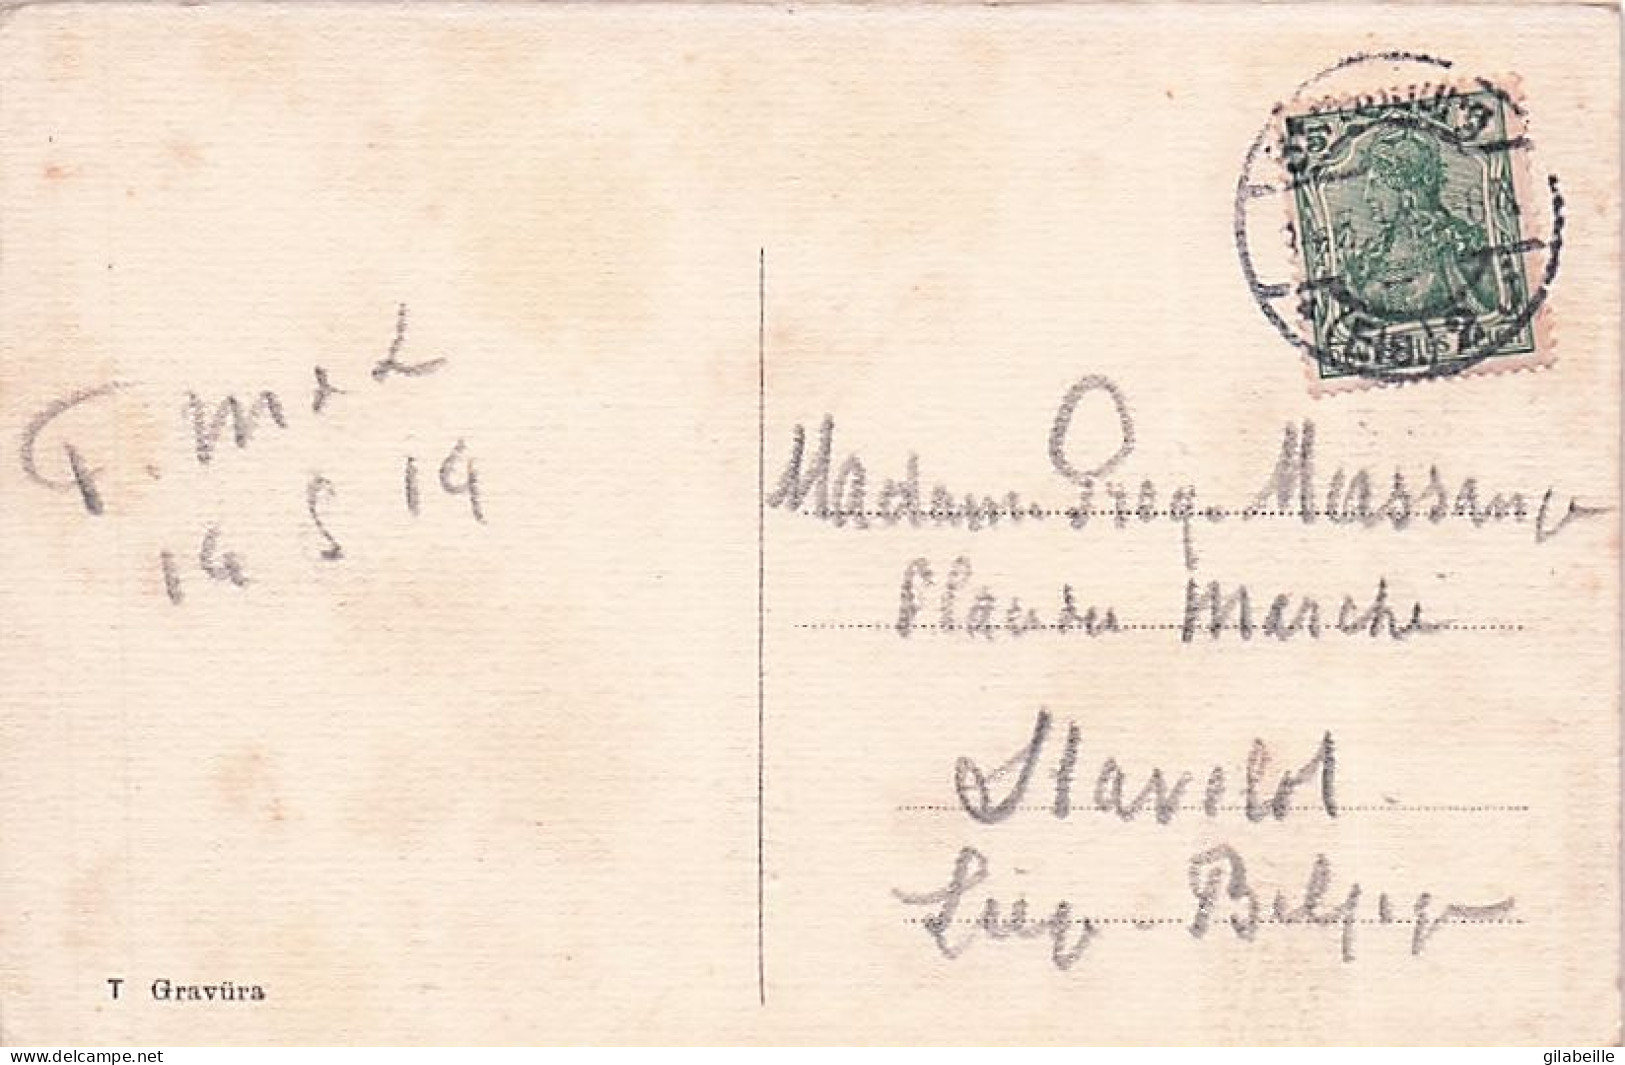 67 - Bas Rhin - STRASBOURG - Ecole Superieure De Jeunes Filles Et Palais Du Rhin - 1914 - Strasbourg